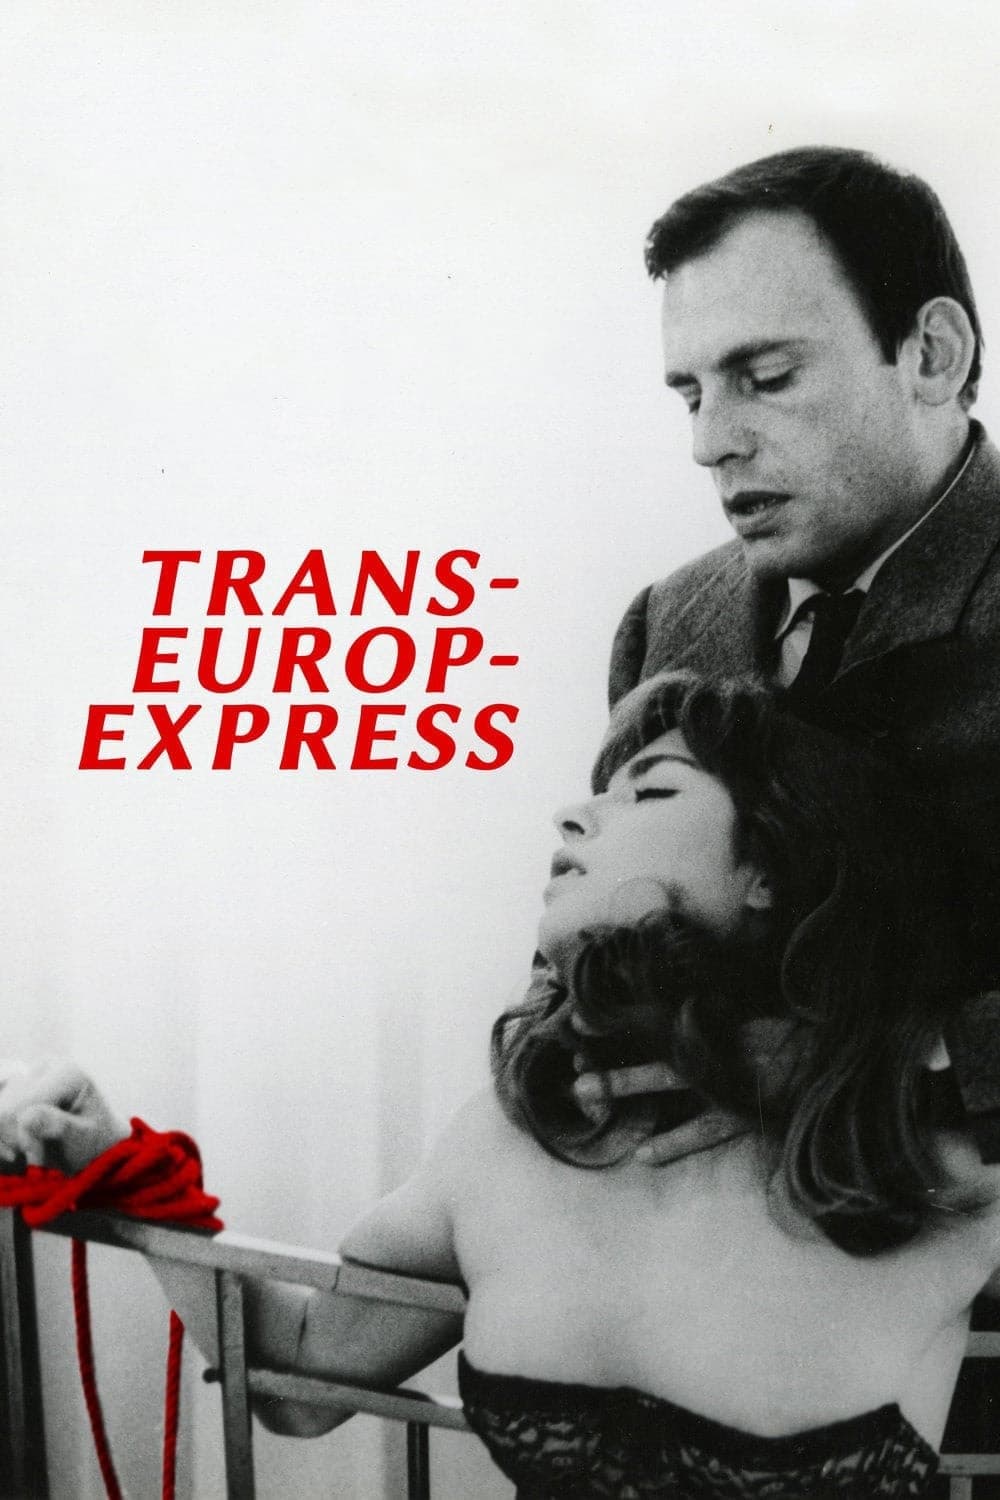 Trans-Europ-Express (1967)